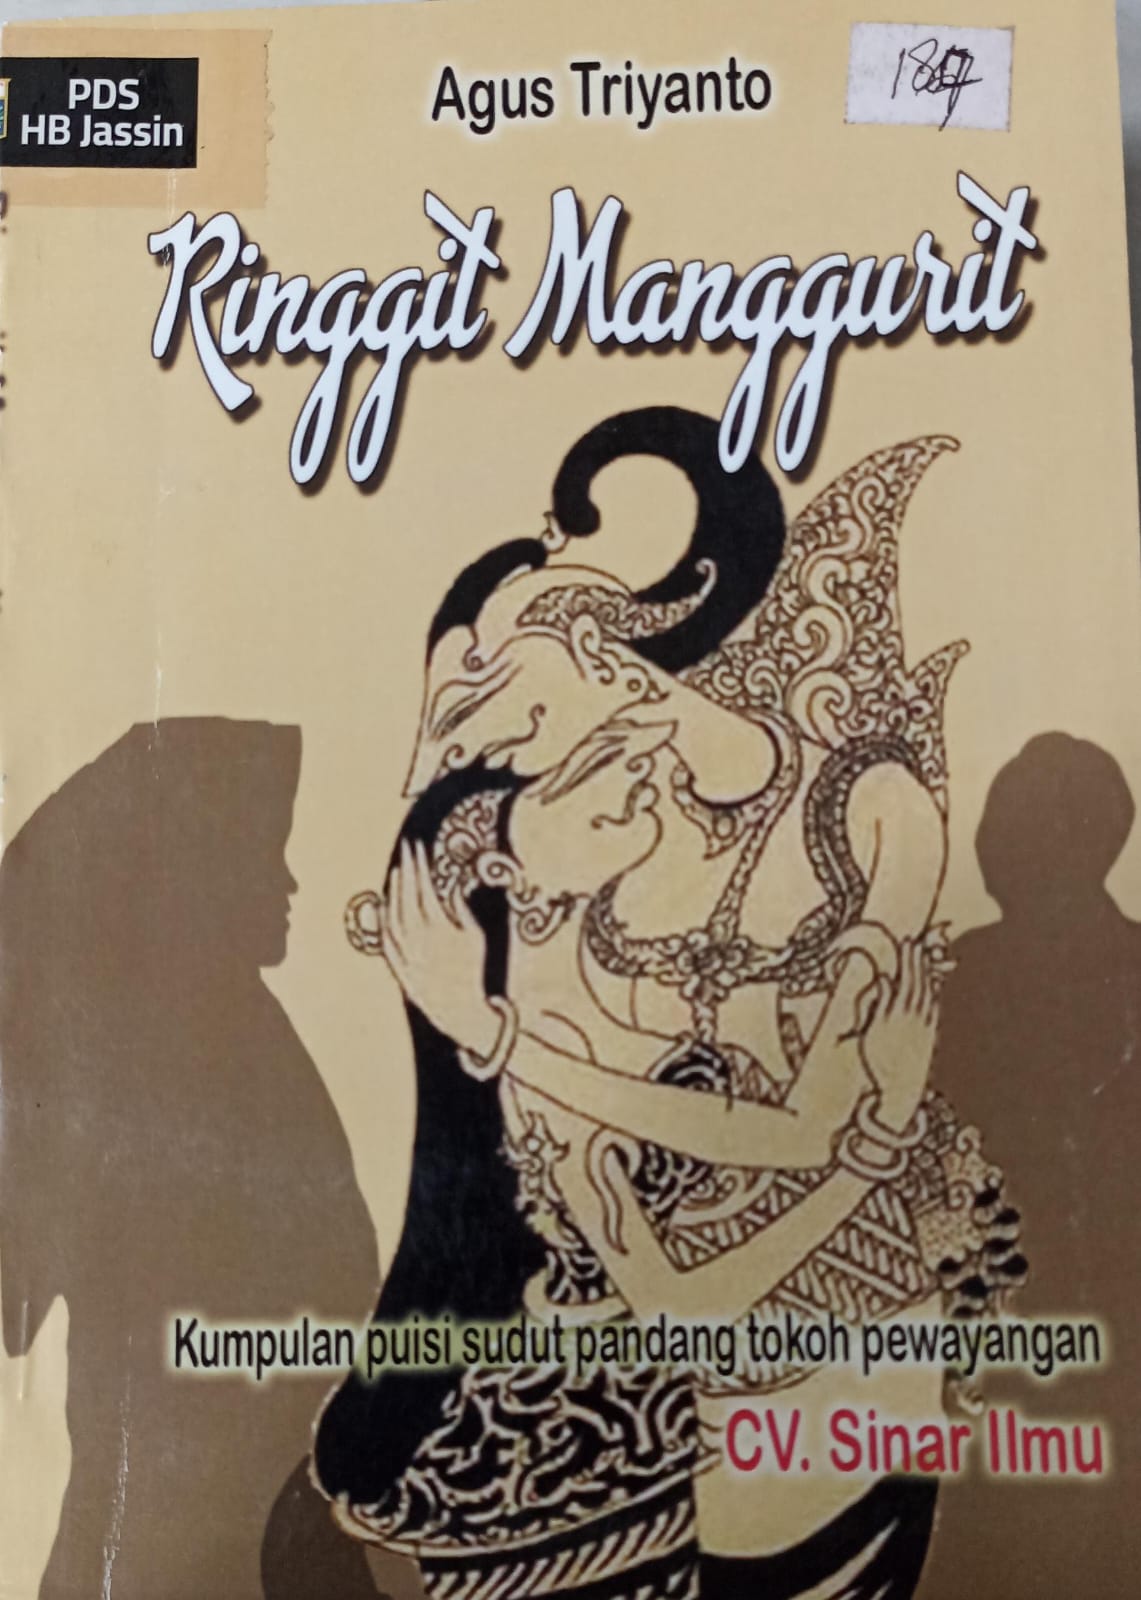 Ringgit Manggurit :  kumpulan puisi sudut pandang tokoh perwayangan